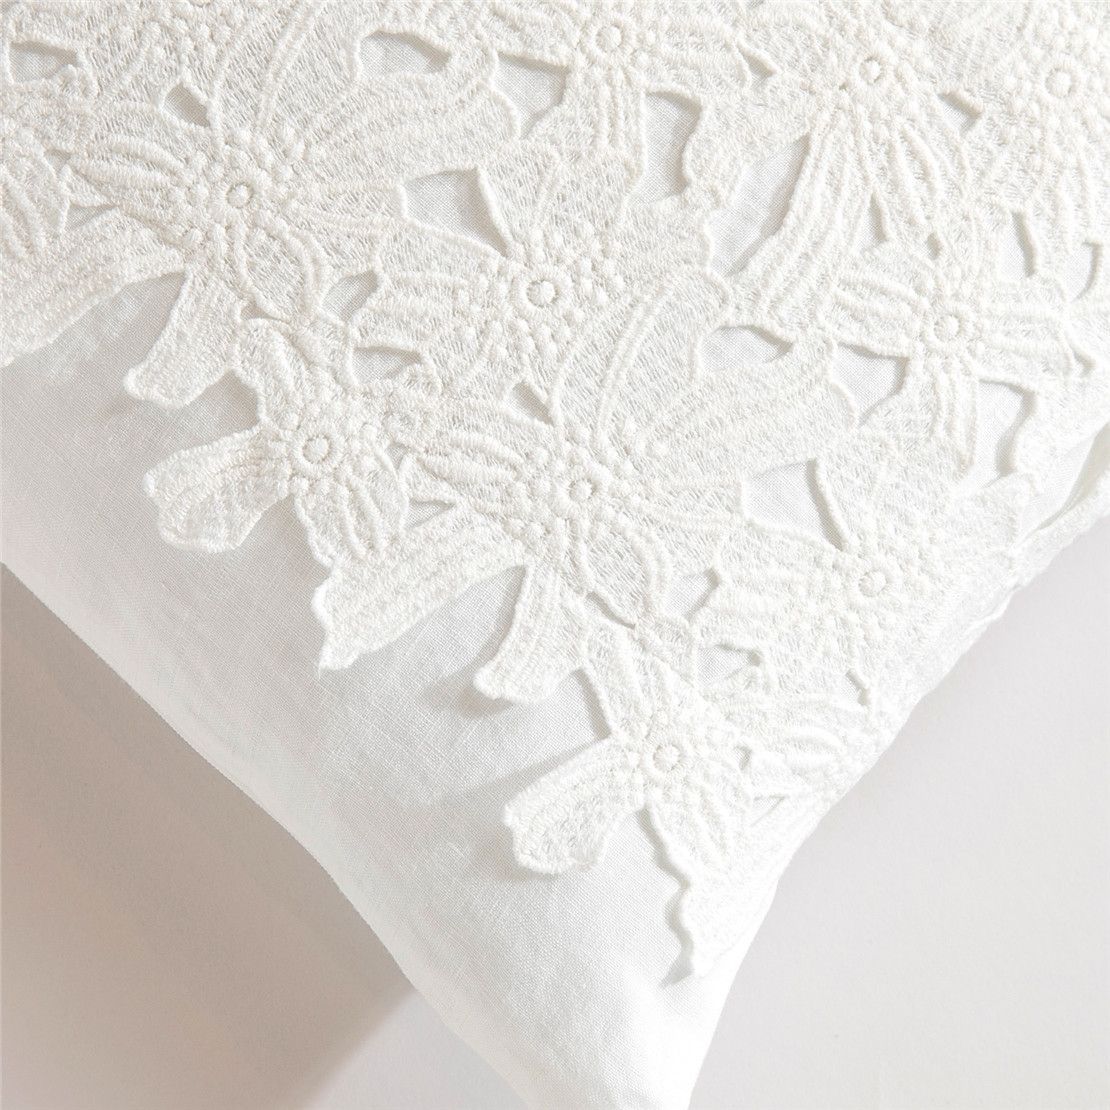 Декоративна подушка з мереживом біла 100% льон 35*55 Berit